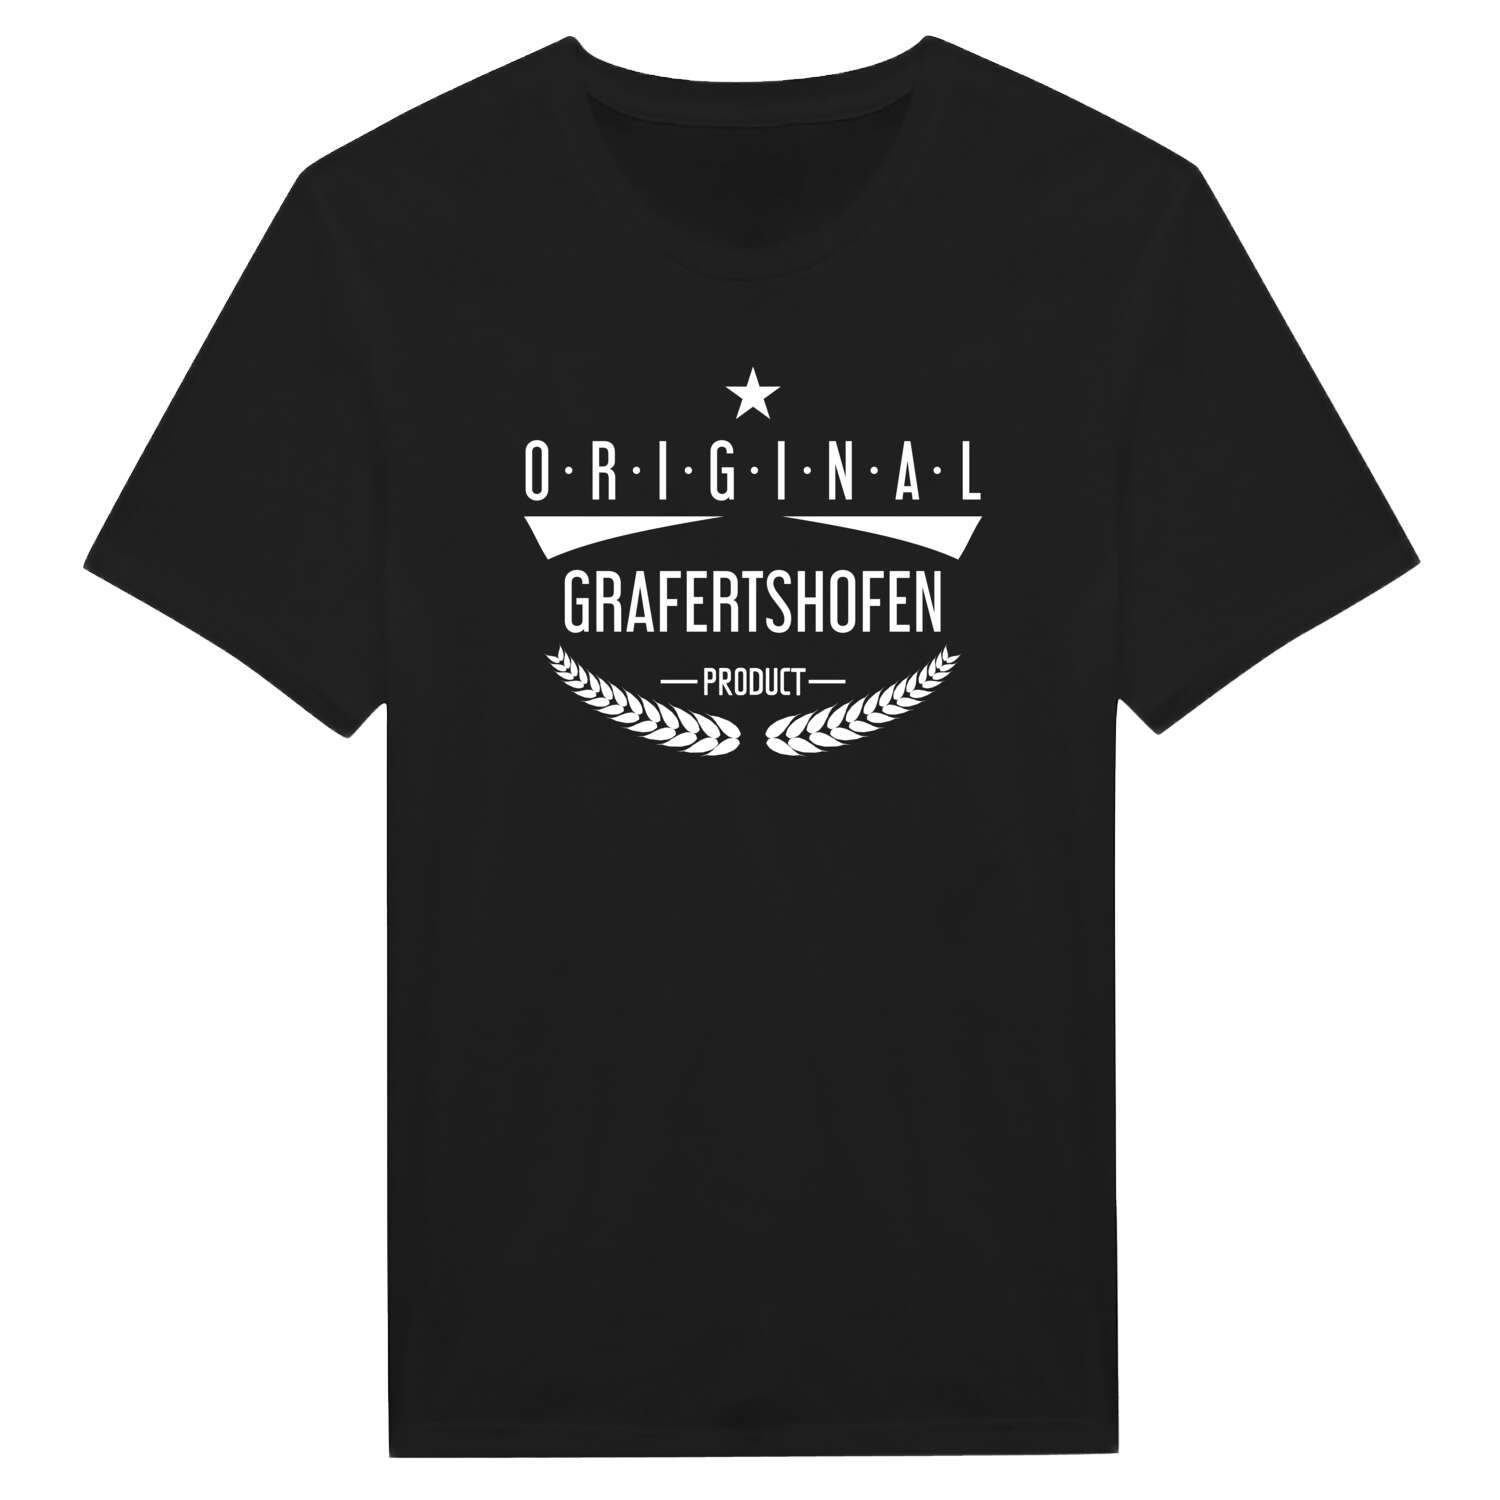 Grafertshofen T-Shirt »Original Product«